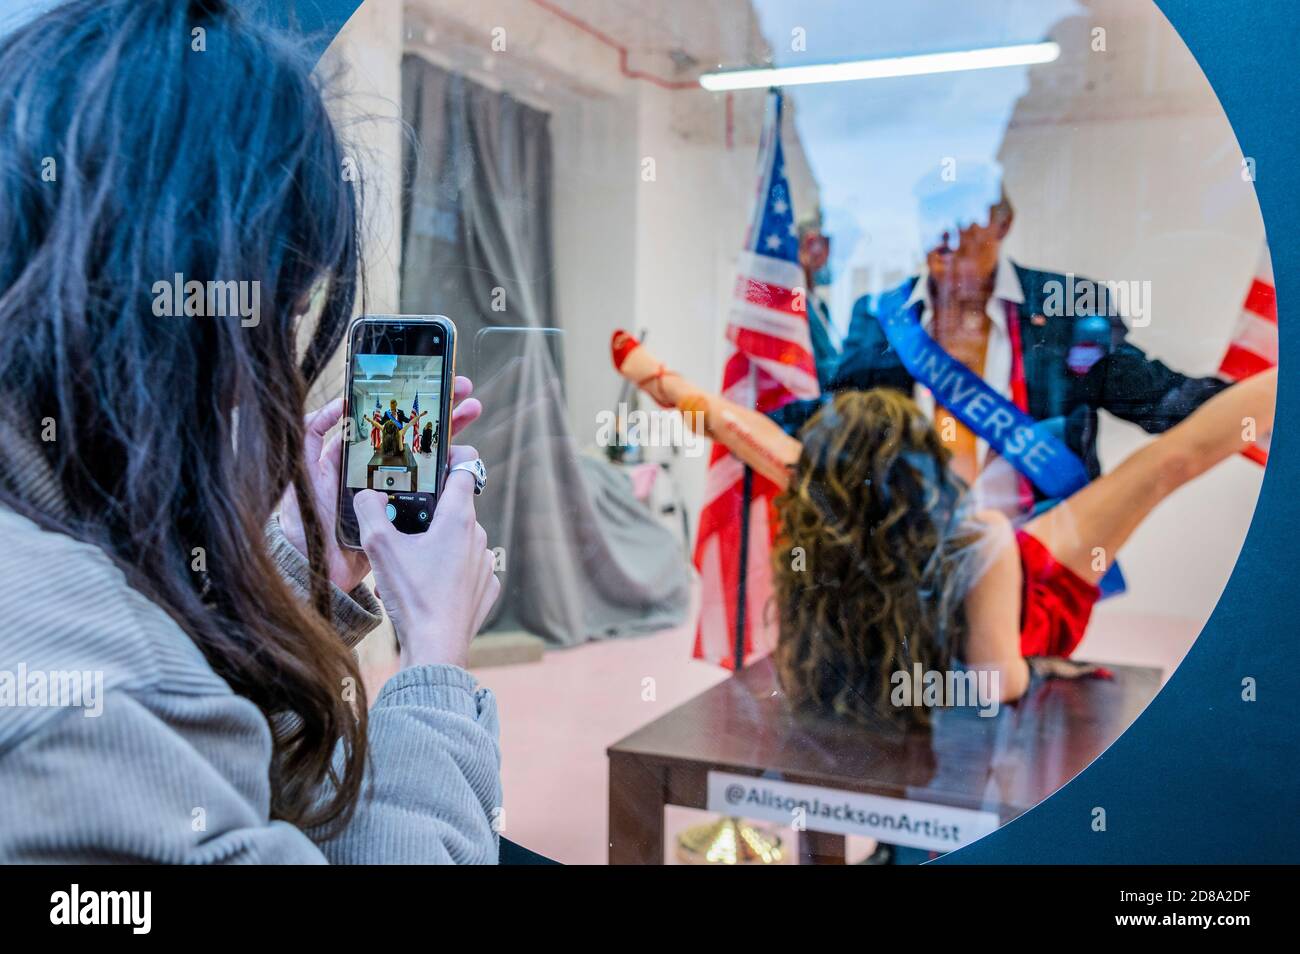 Londres, Royaume-Uni. 28 octobre 2020. Donald Trump caricature dans une position de compromis avec Miss America - une œuvre satirique d'Alison Jackson à la Soho Revue Gallery. Crédit : Guy Bell/Alay Live News Banque D'Images